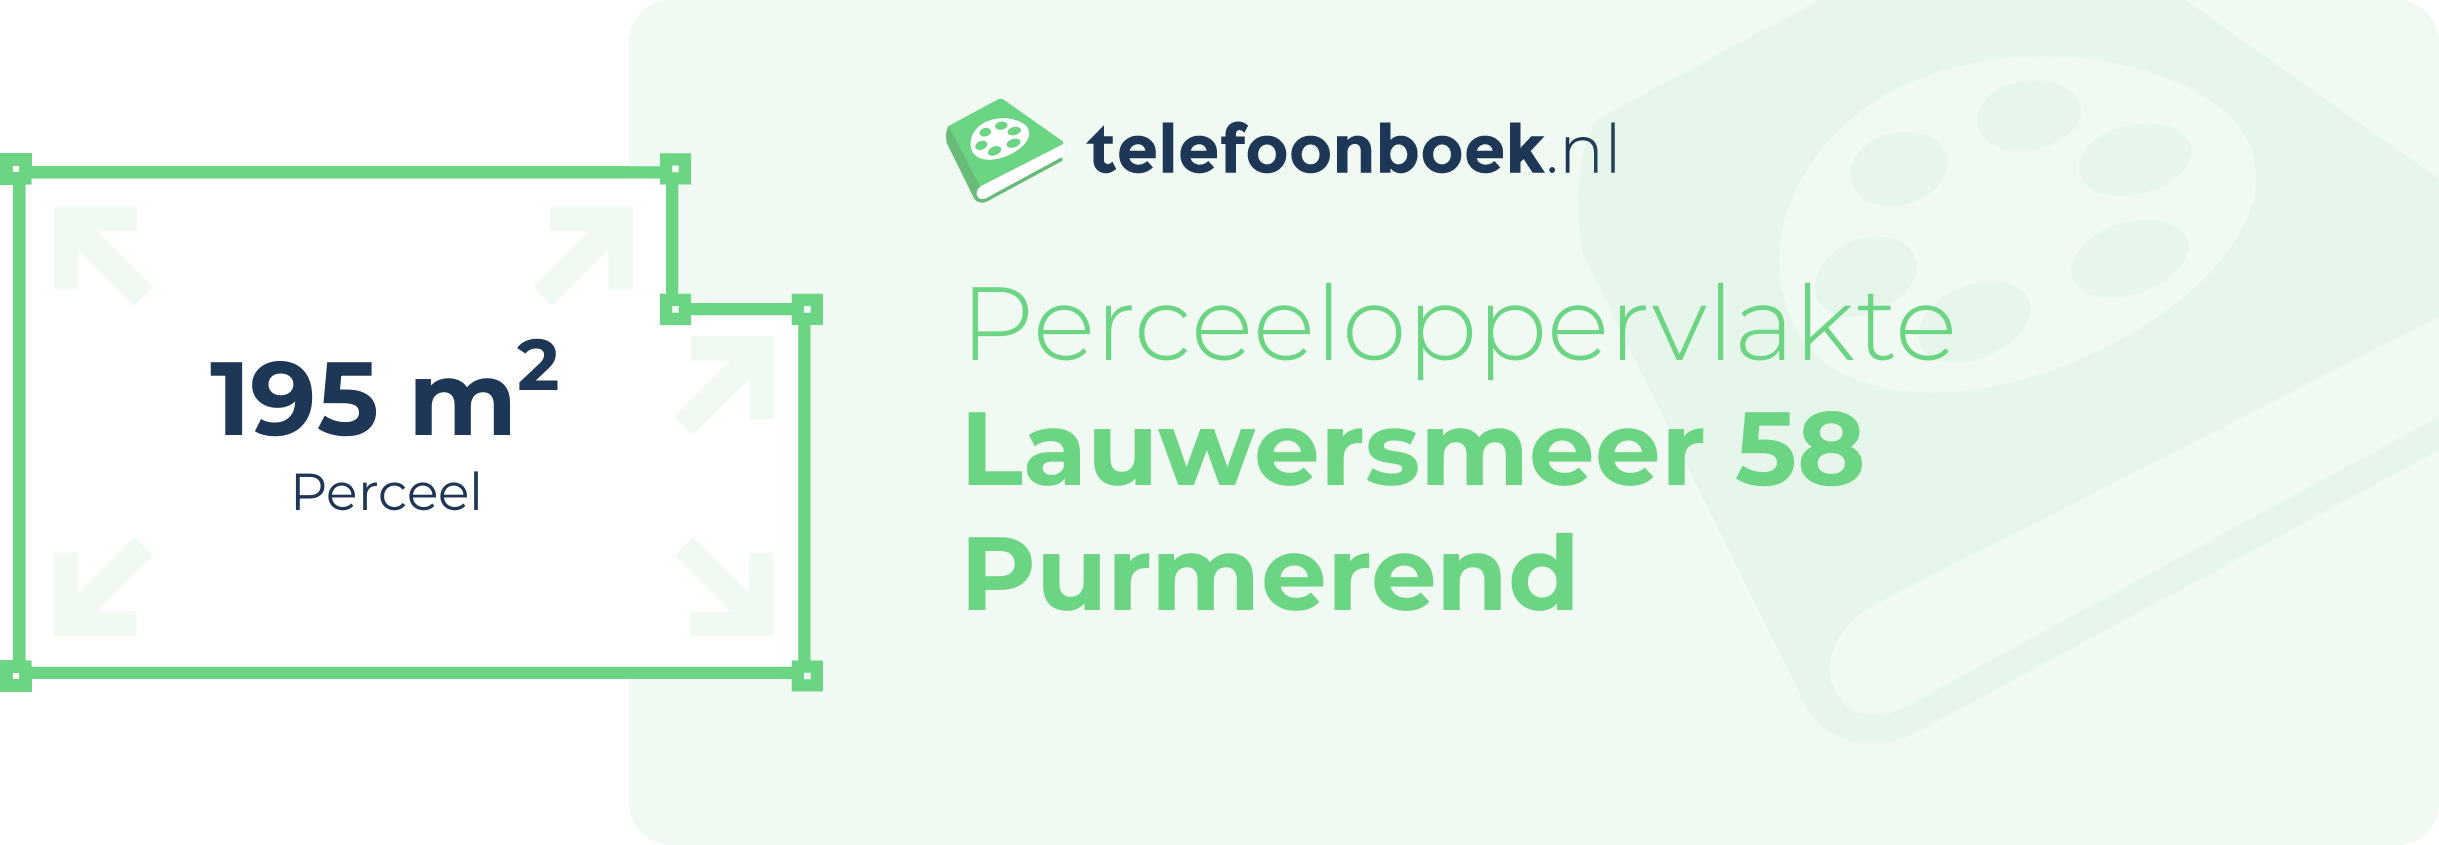 Perceeloppervlakte Lauwersmeer 58 Purmerend